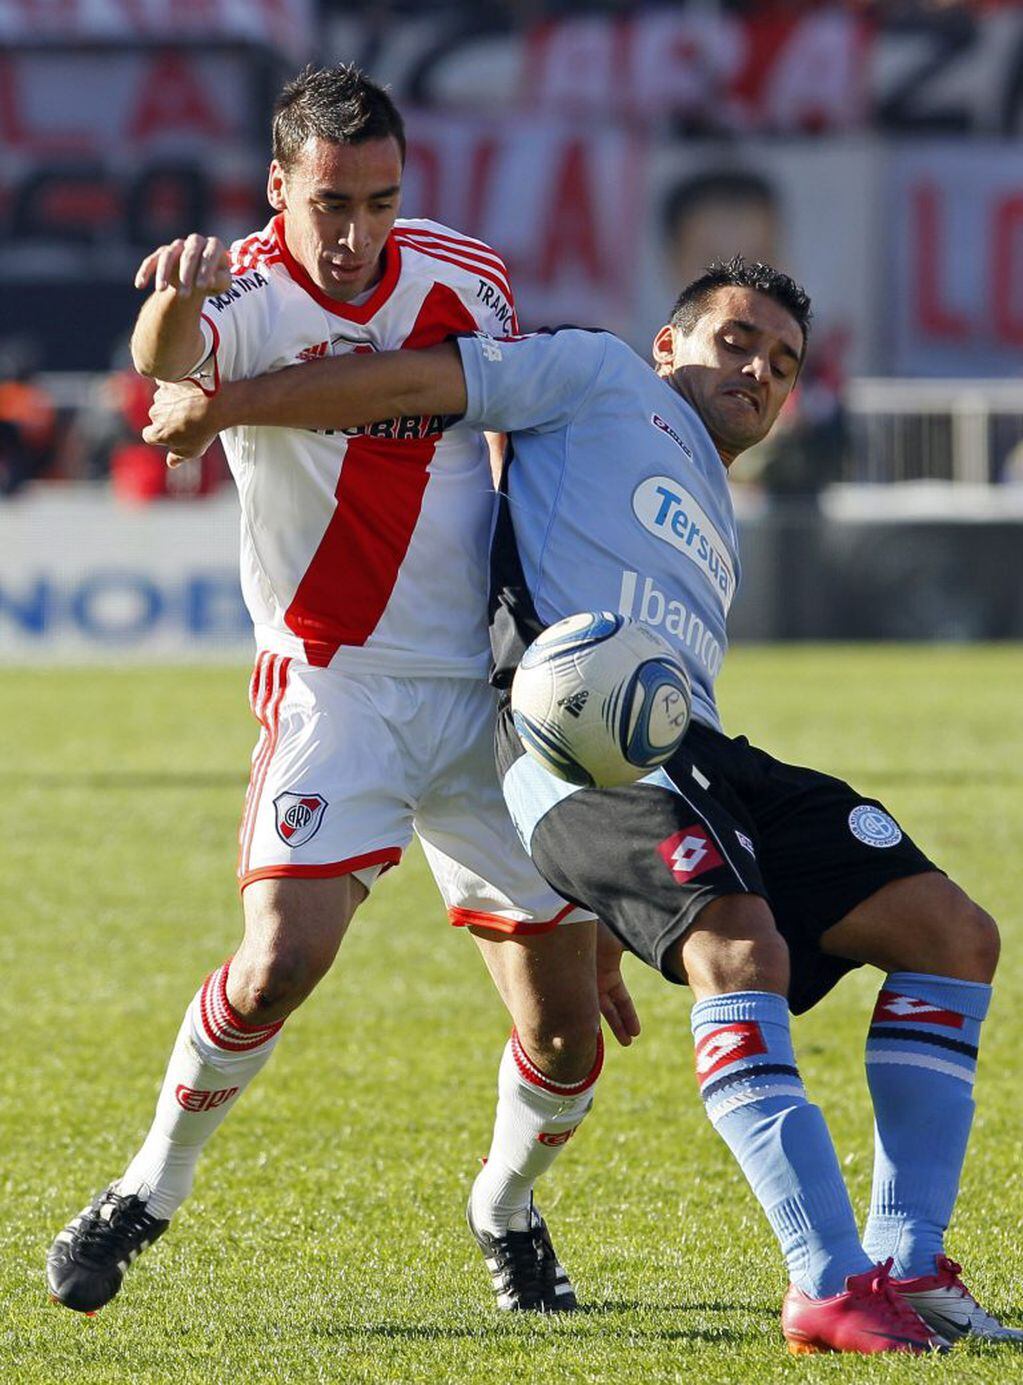 En Belgrano era feliz y en 2011 obtuvo el reconocimiento máximo para su carrera. (Foto: AP Photo/Ricardo Mazalan)